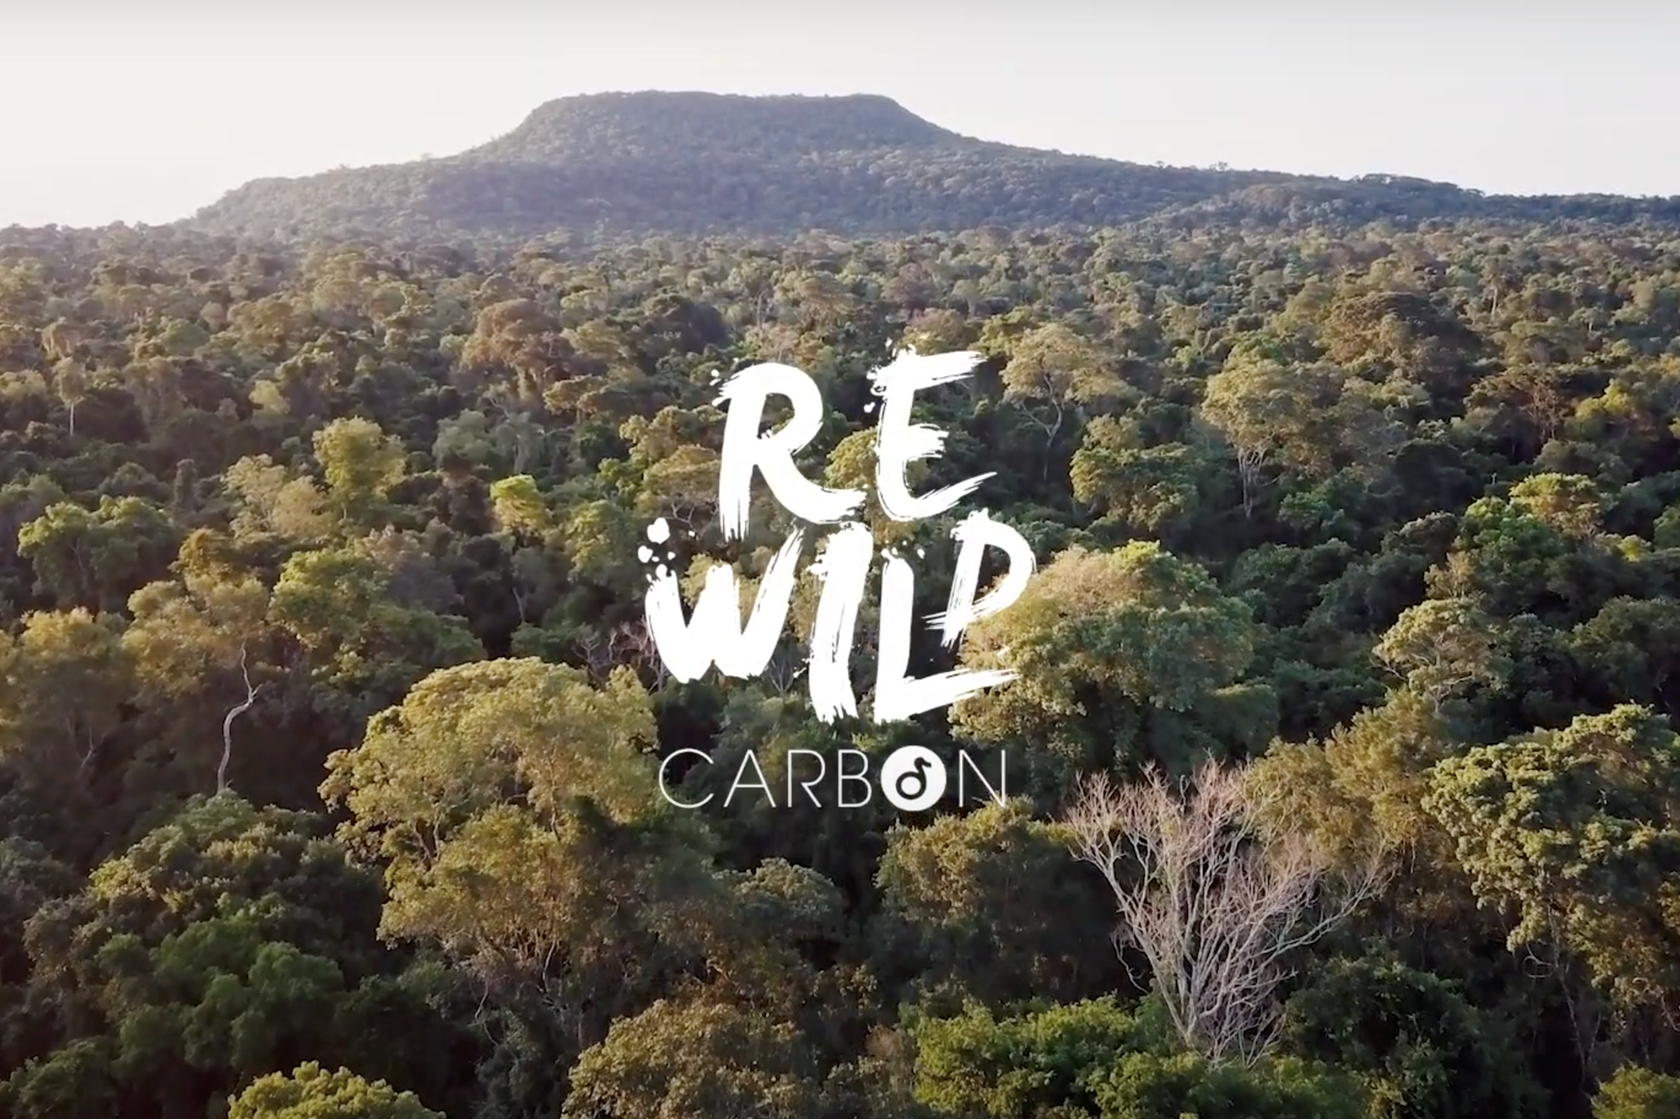 Rewildcarbonvideo